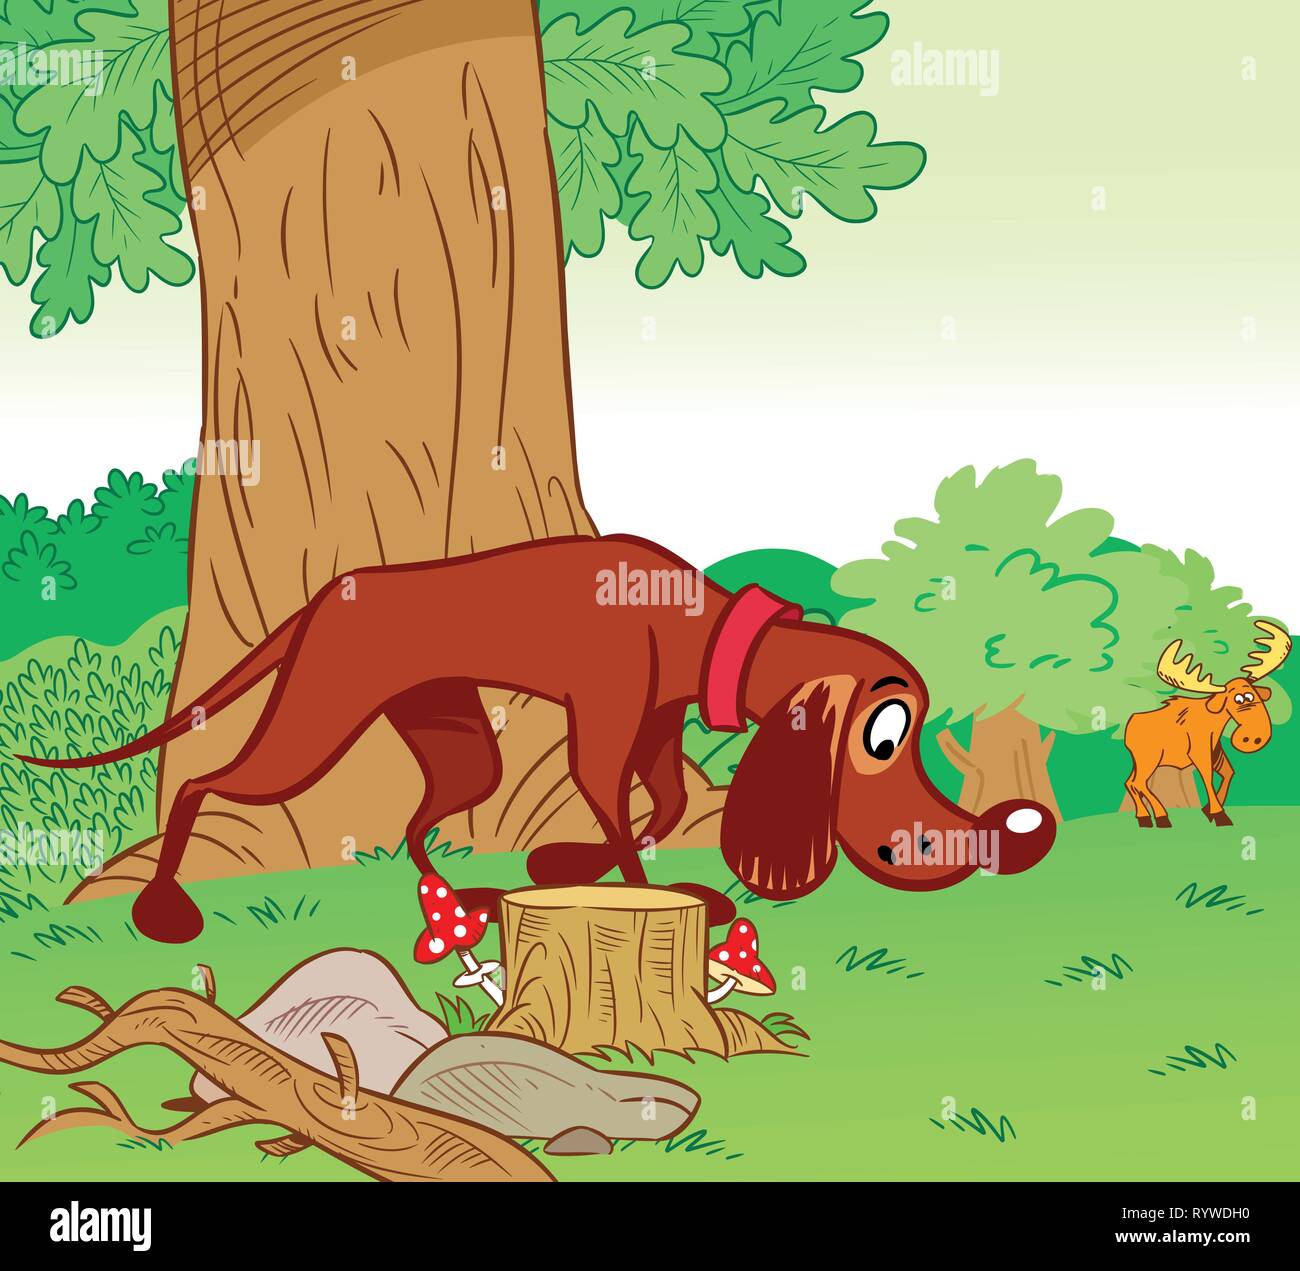 Die Abbildung zeigt, wie ein Jagdhund auf den Spuren von Elchen im Hintergrund den Wald läuft. Abbildung im Comic-stil auf separaten Ebenen getan. Stock Vektor